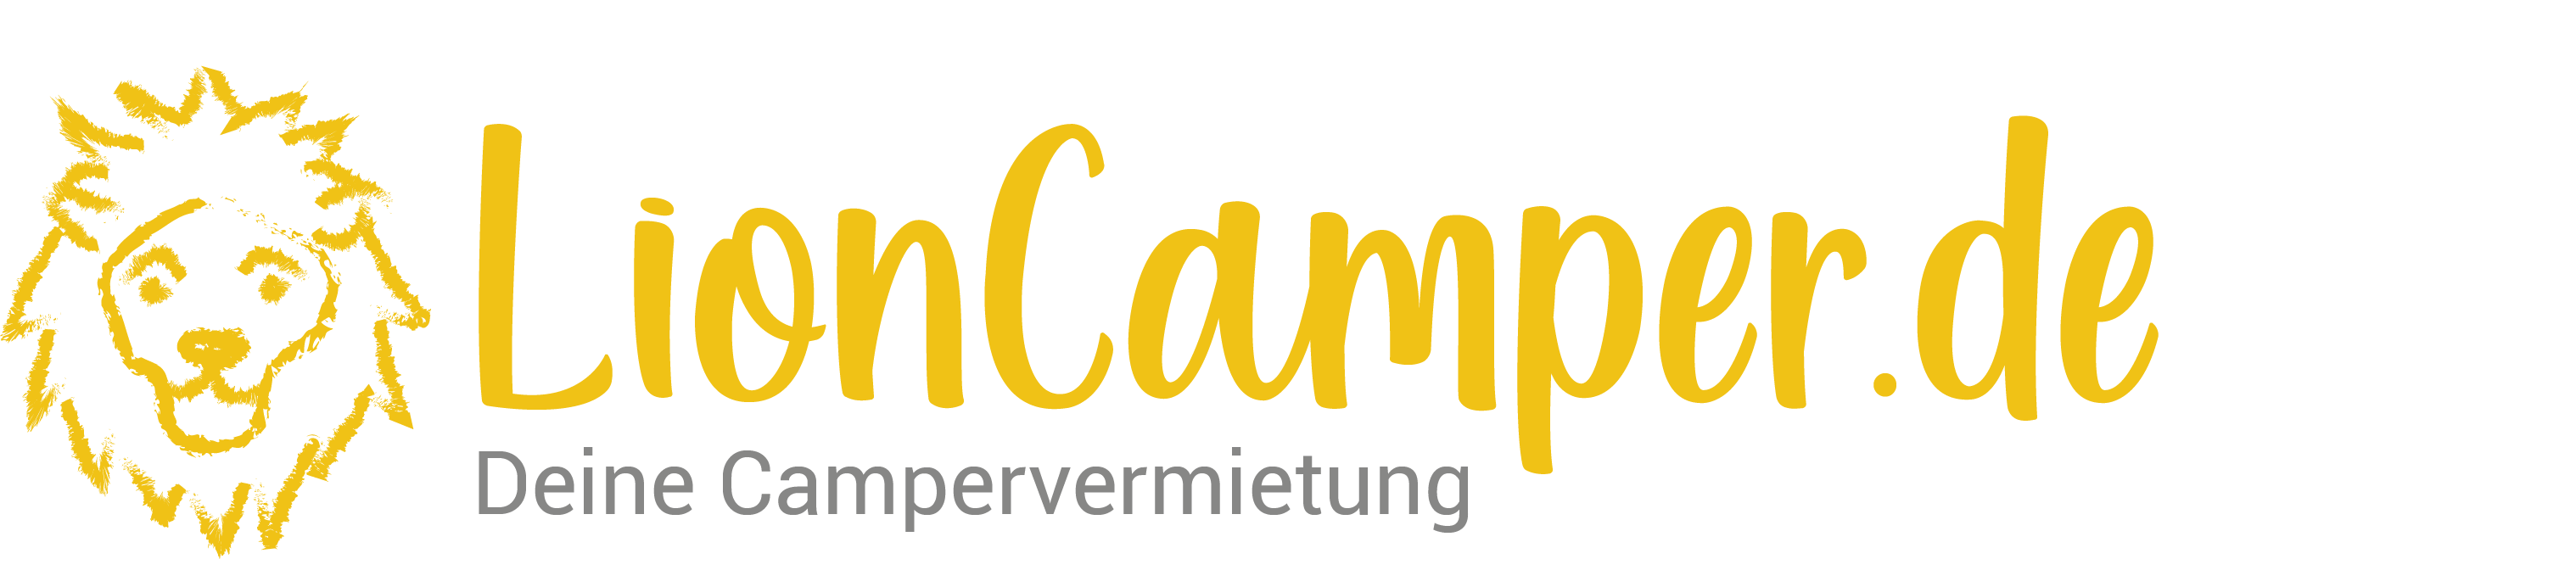 Lioncamper Logo